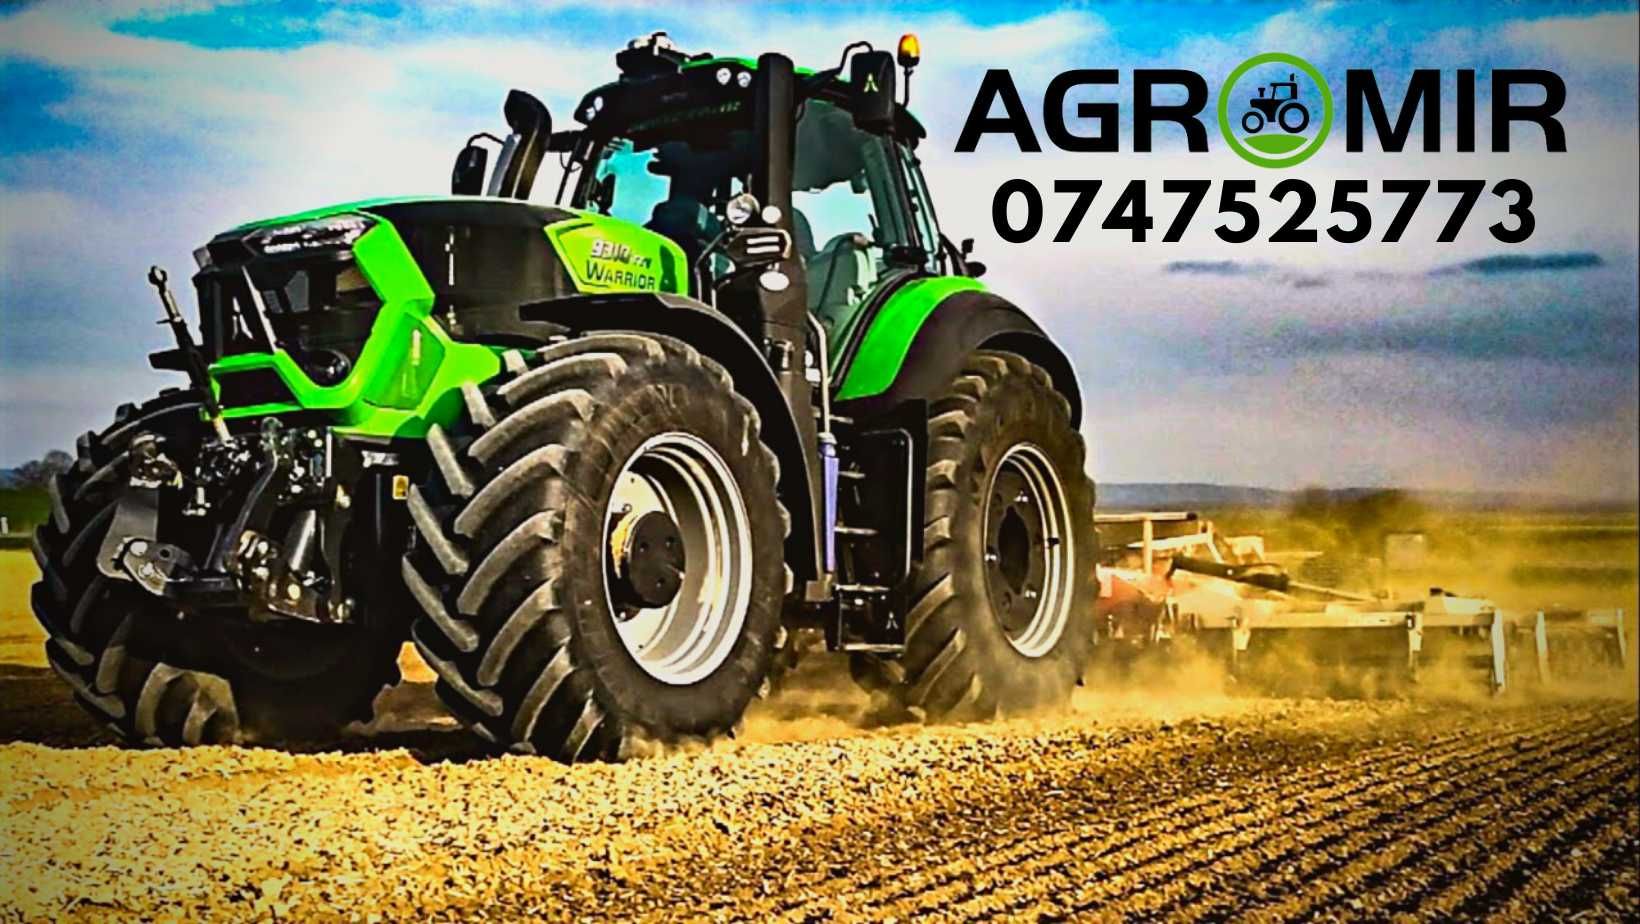 13.6-28 Anvelope noi agricole BKT cauciucuri pentru tractor